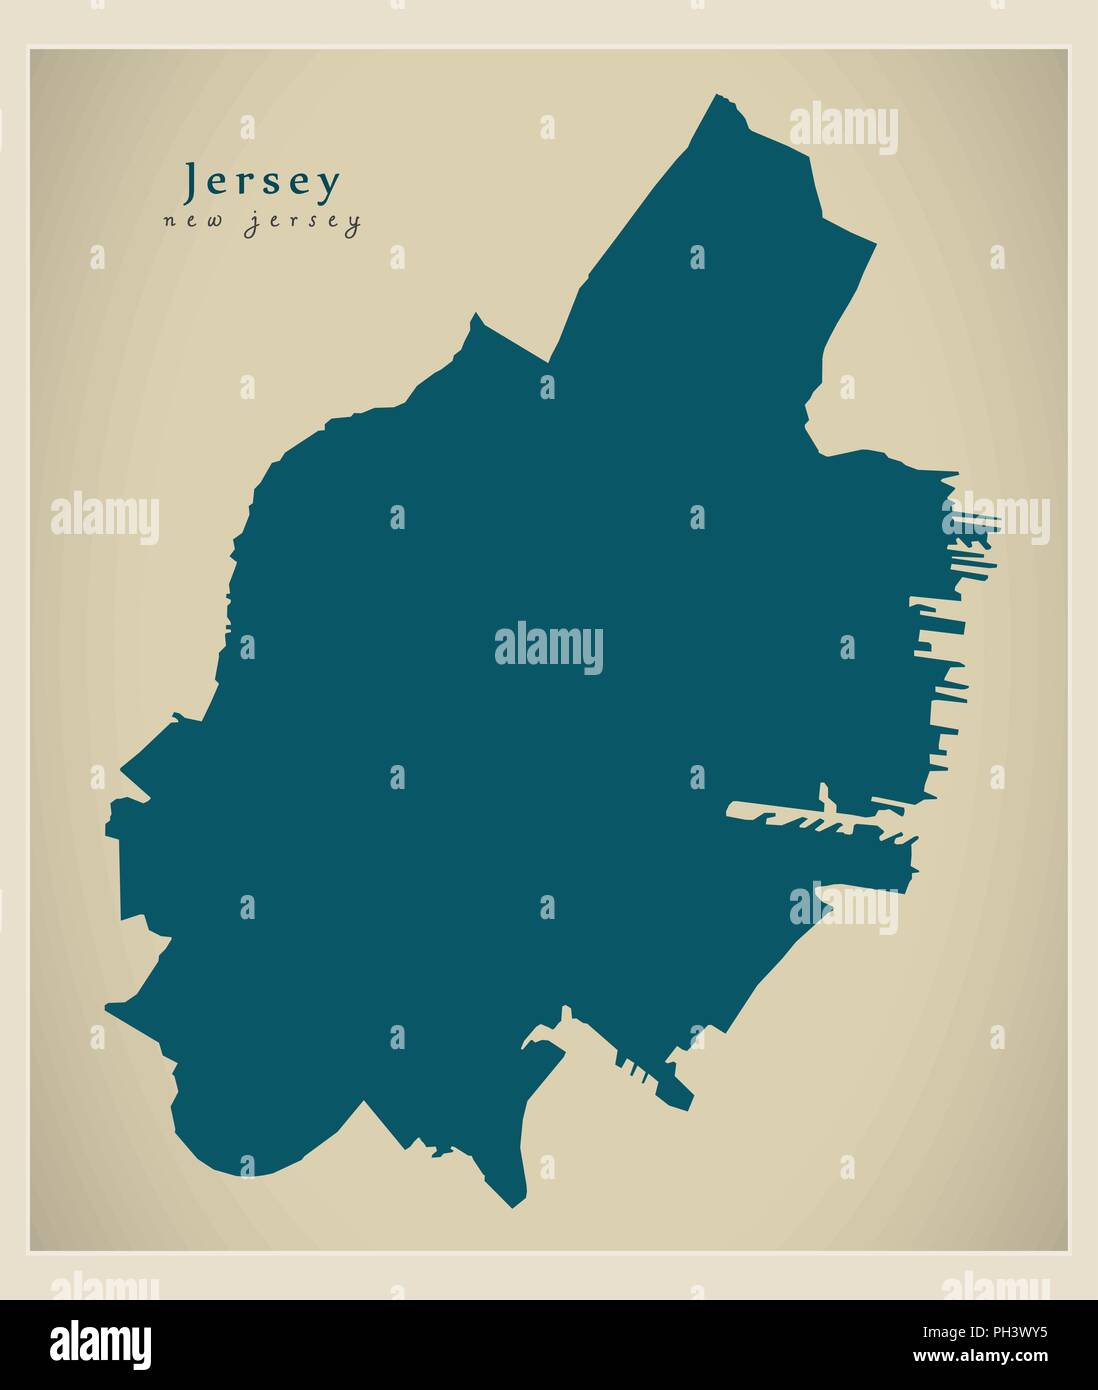 Plan de la ville moderne - Jersey New Jersey Ville de l'USA Illustration de Vecteur